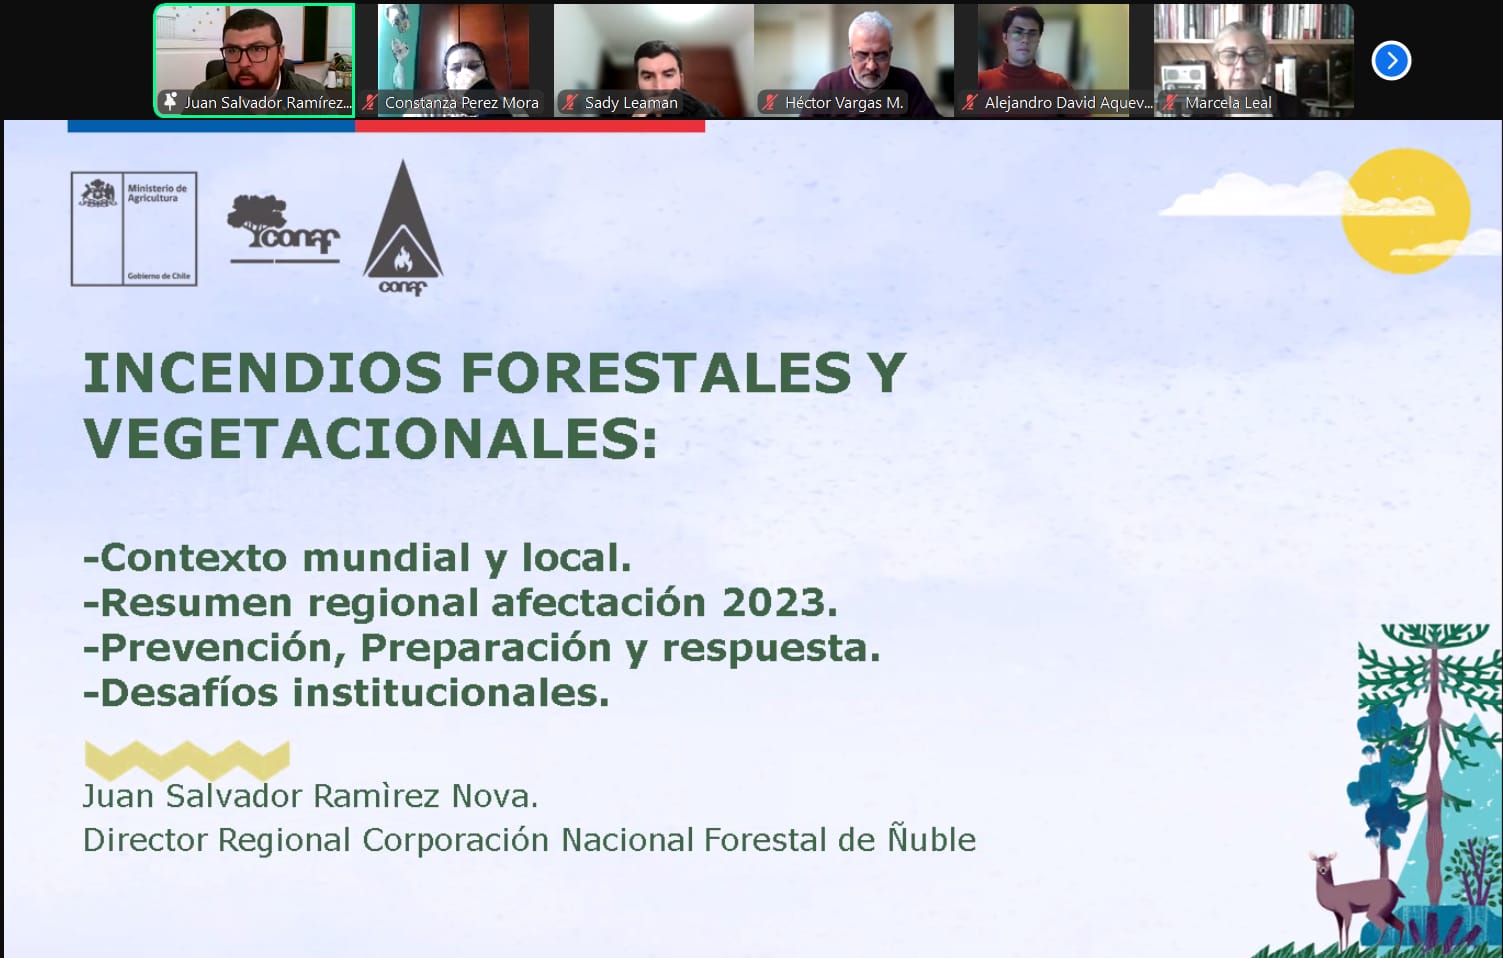 Con éxito realizan conversatorio online sobre impactos socioambientales de los incendios forestales en Ñuble